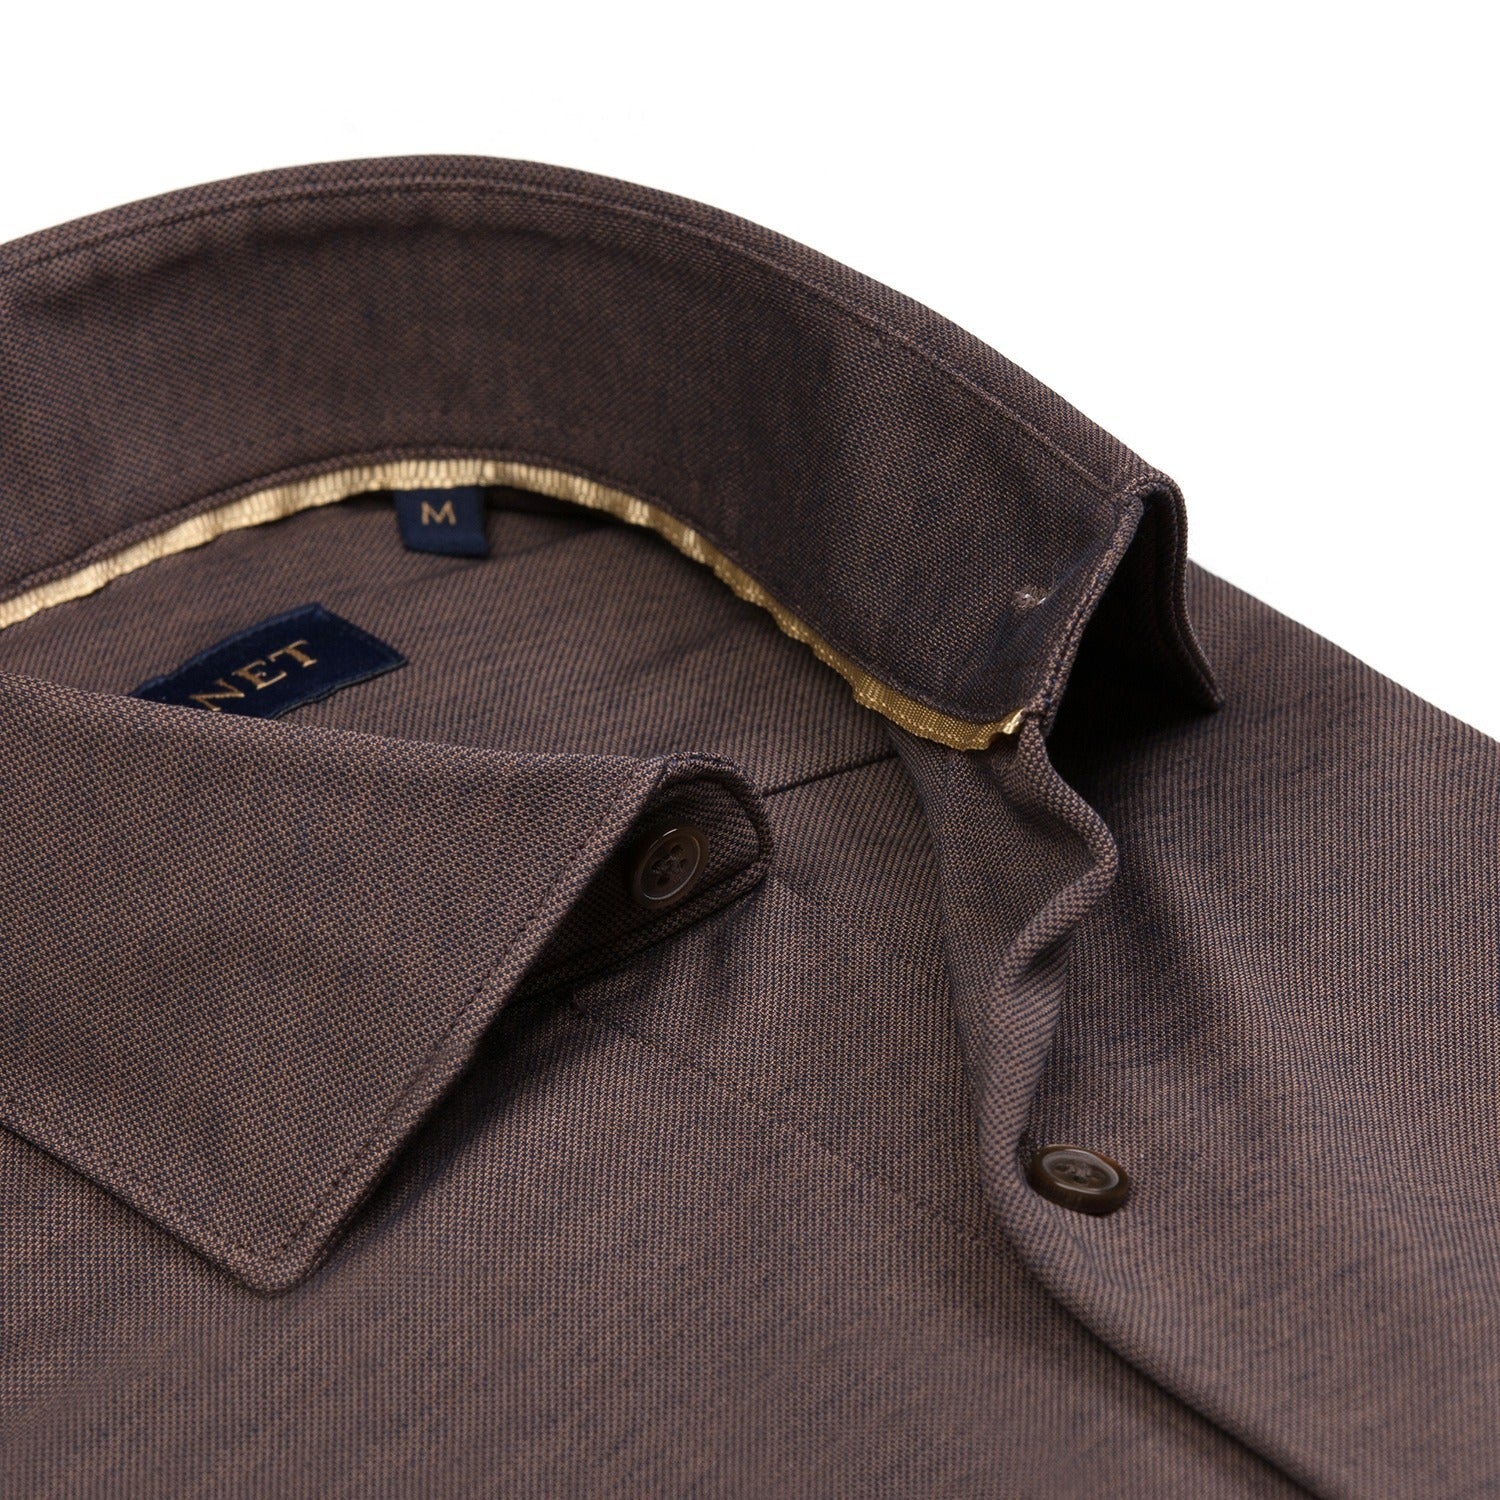 Garnet Italian Collar Jersey Long Sleeve Button Up Shirt - 0